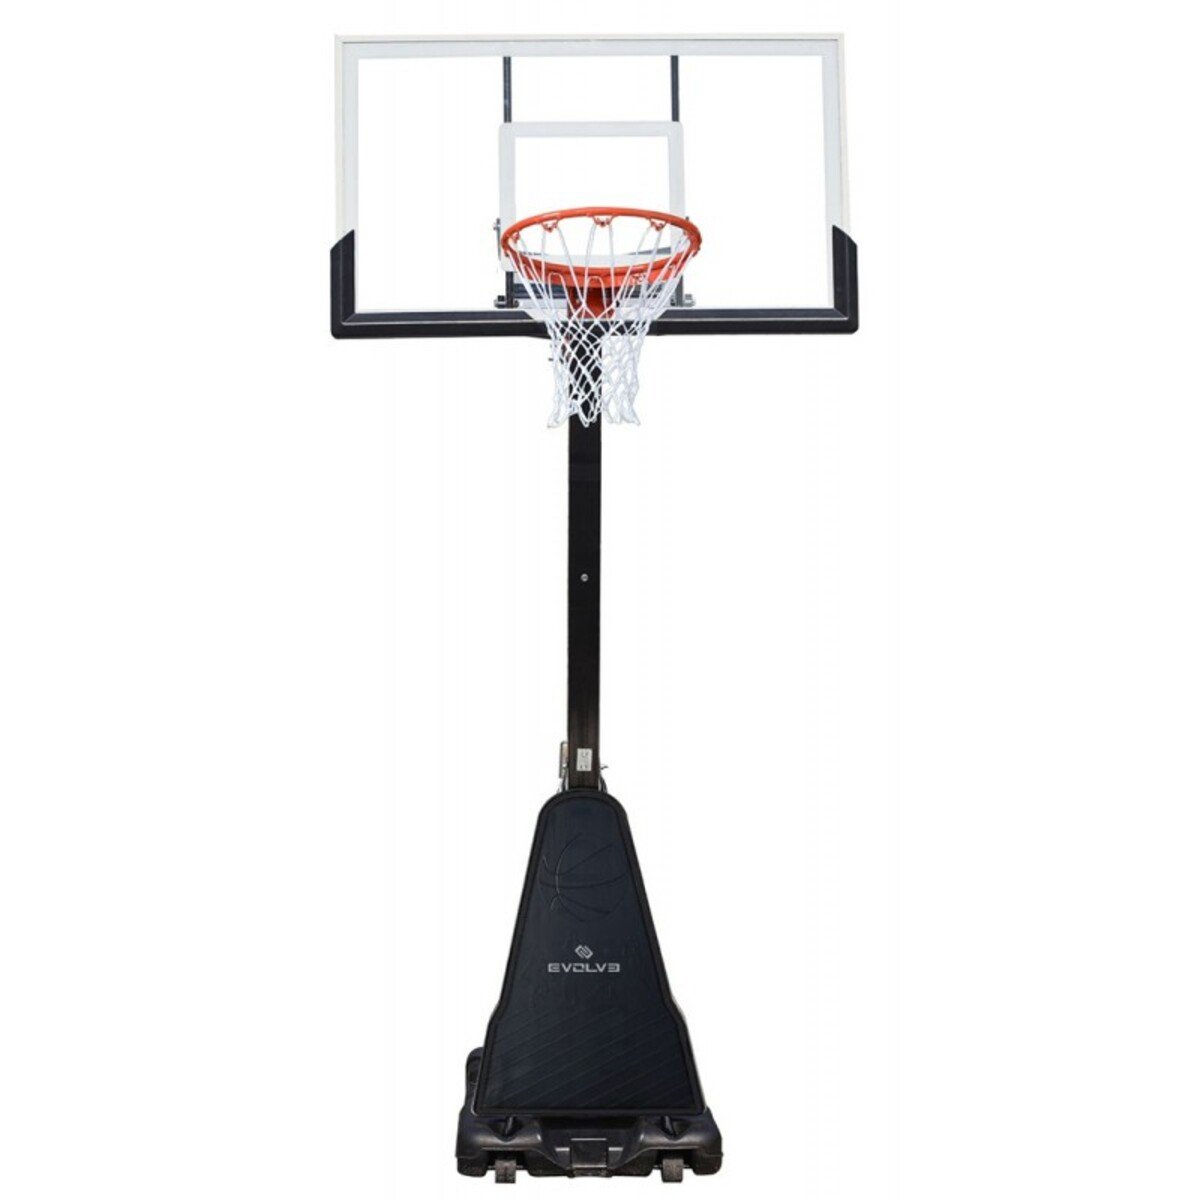 Zdjęcia - Kosz do koszykówki Zestaw do koszykówki kosz Evolve Portable Basketball Stand mobilny - EV-BS